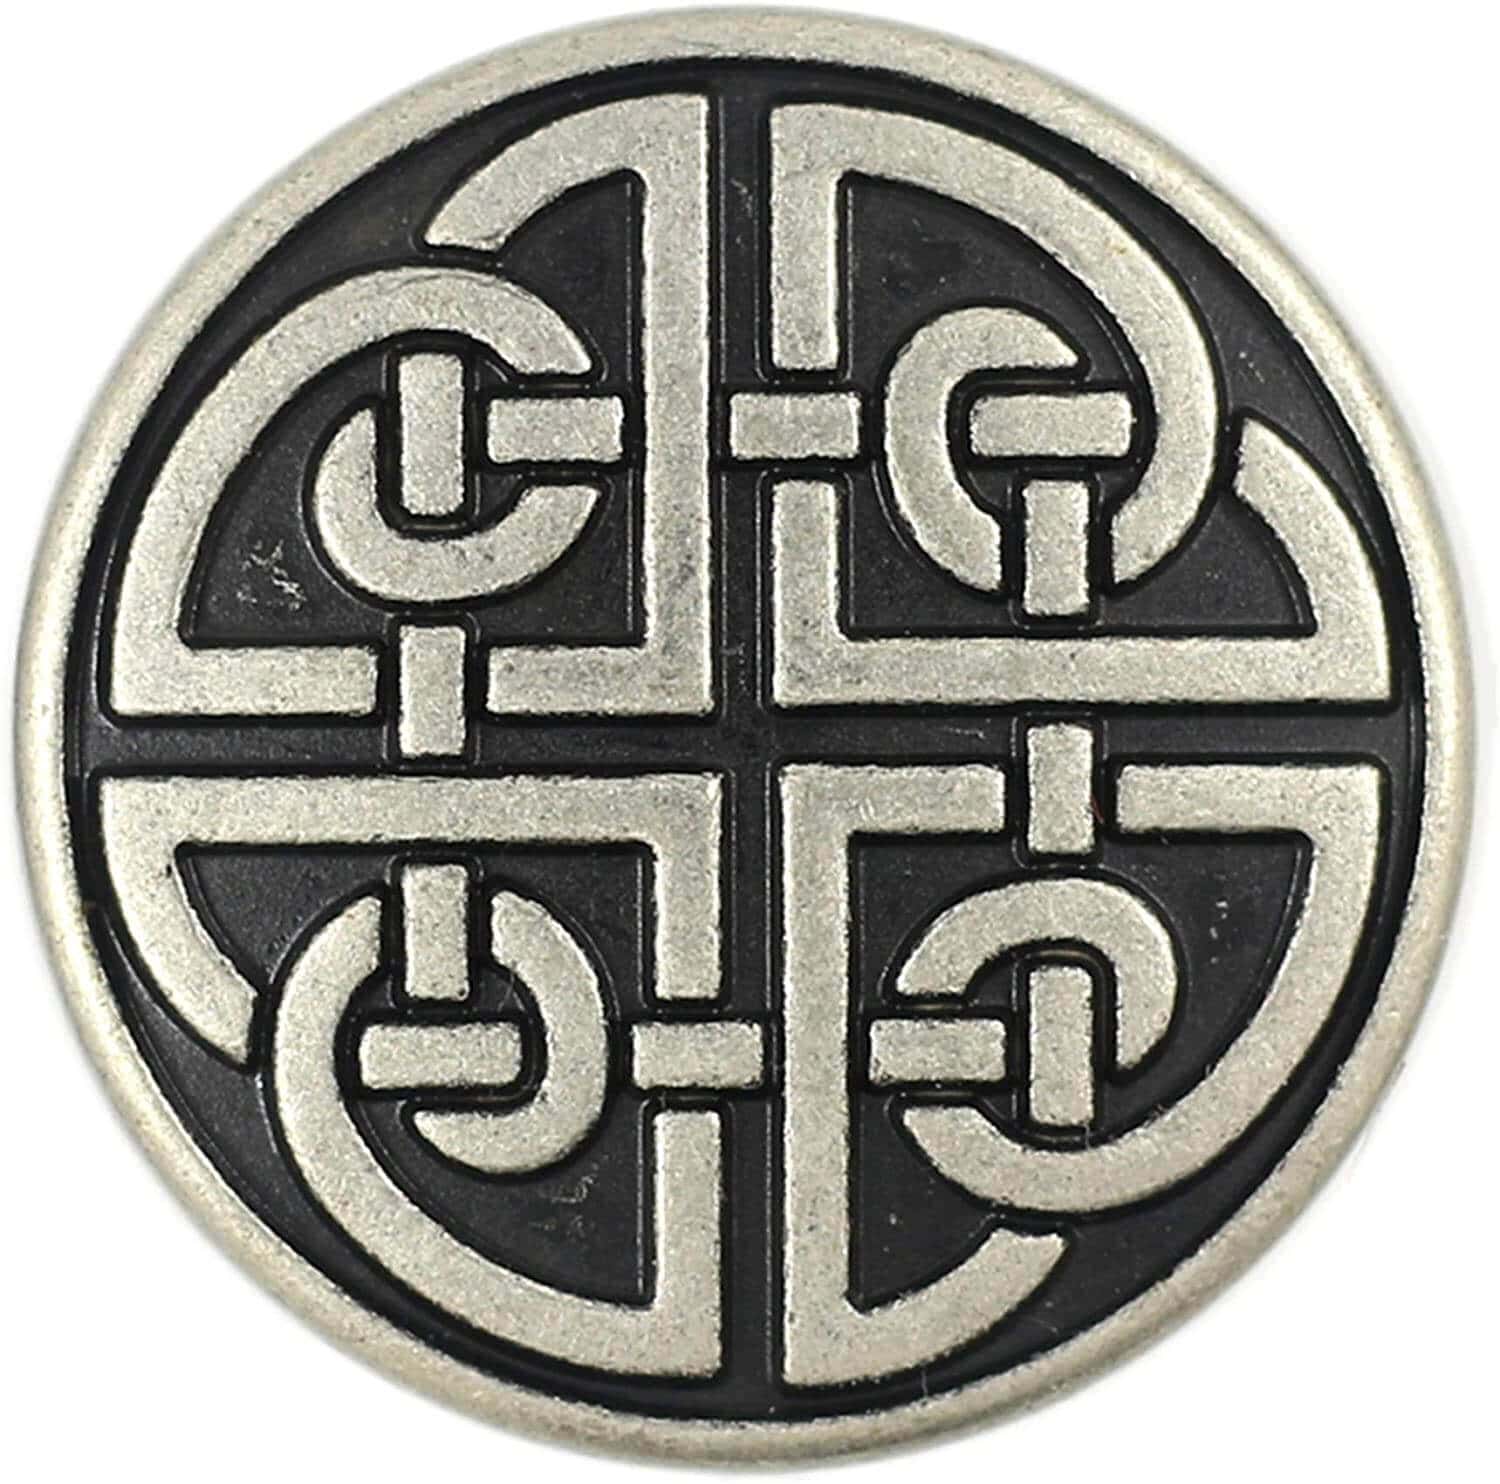 Celtic Knot Logo